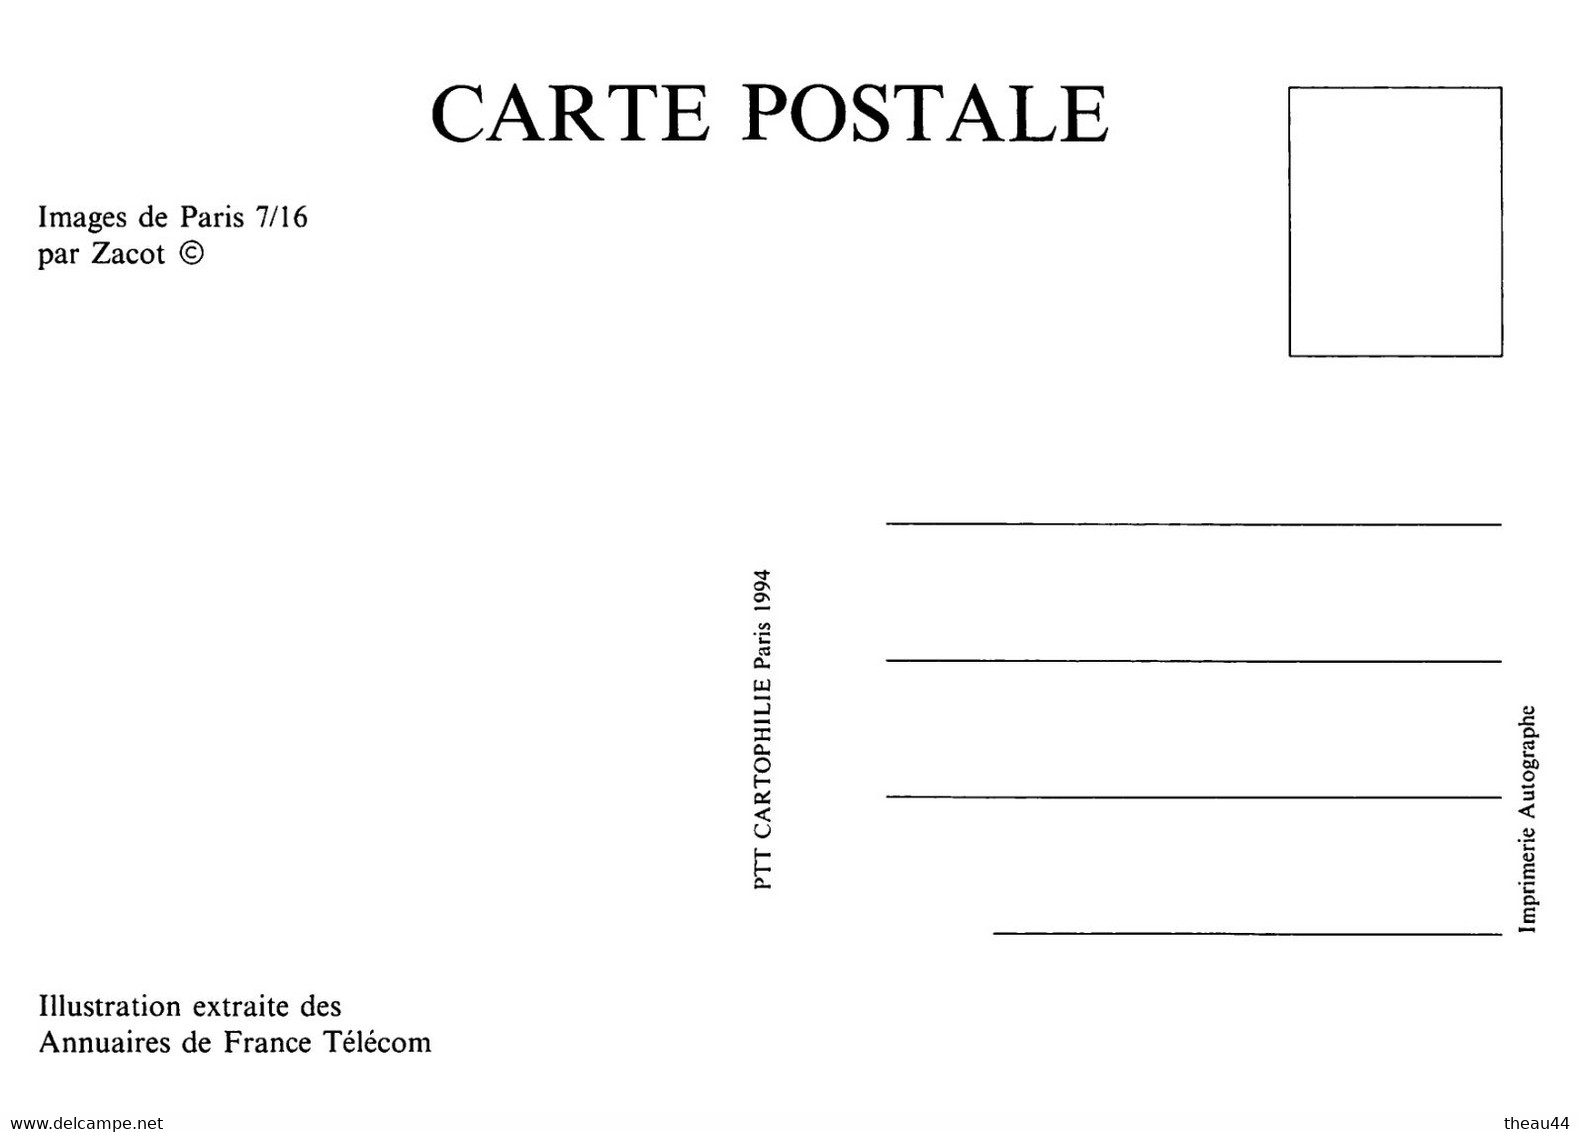 Lot 16 Cartes de l'Illustrateur " ZACOT " -Illustration extraite des Annuaires de "FRANCE-TELECOM" - " PTT Cartophilie "